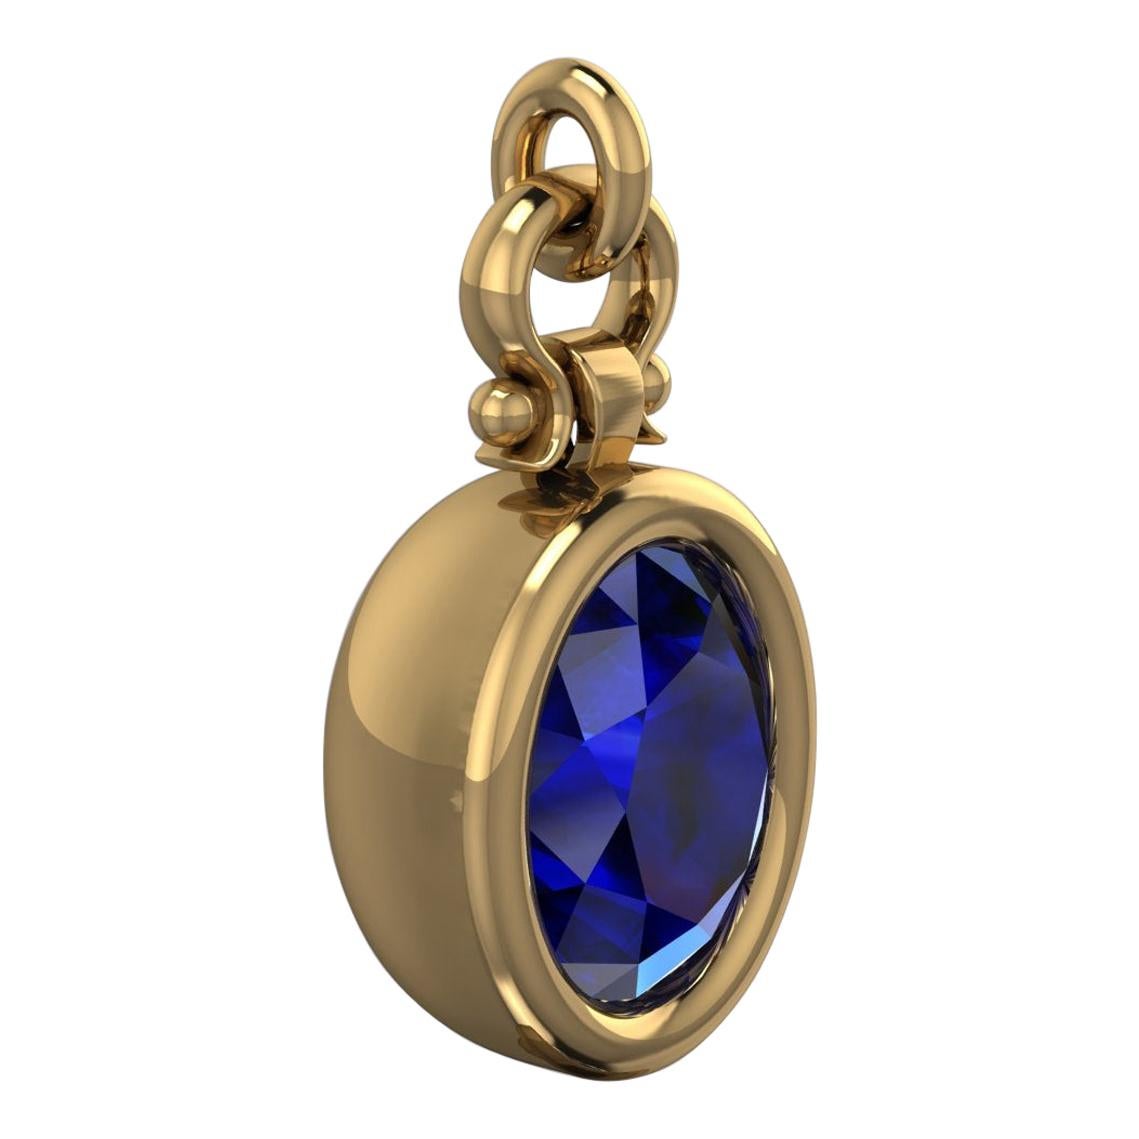 Berberyn Certified 3.27 Carat Oval Cut Blue Sapphire Pendant Necklace in 18k For Sale